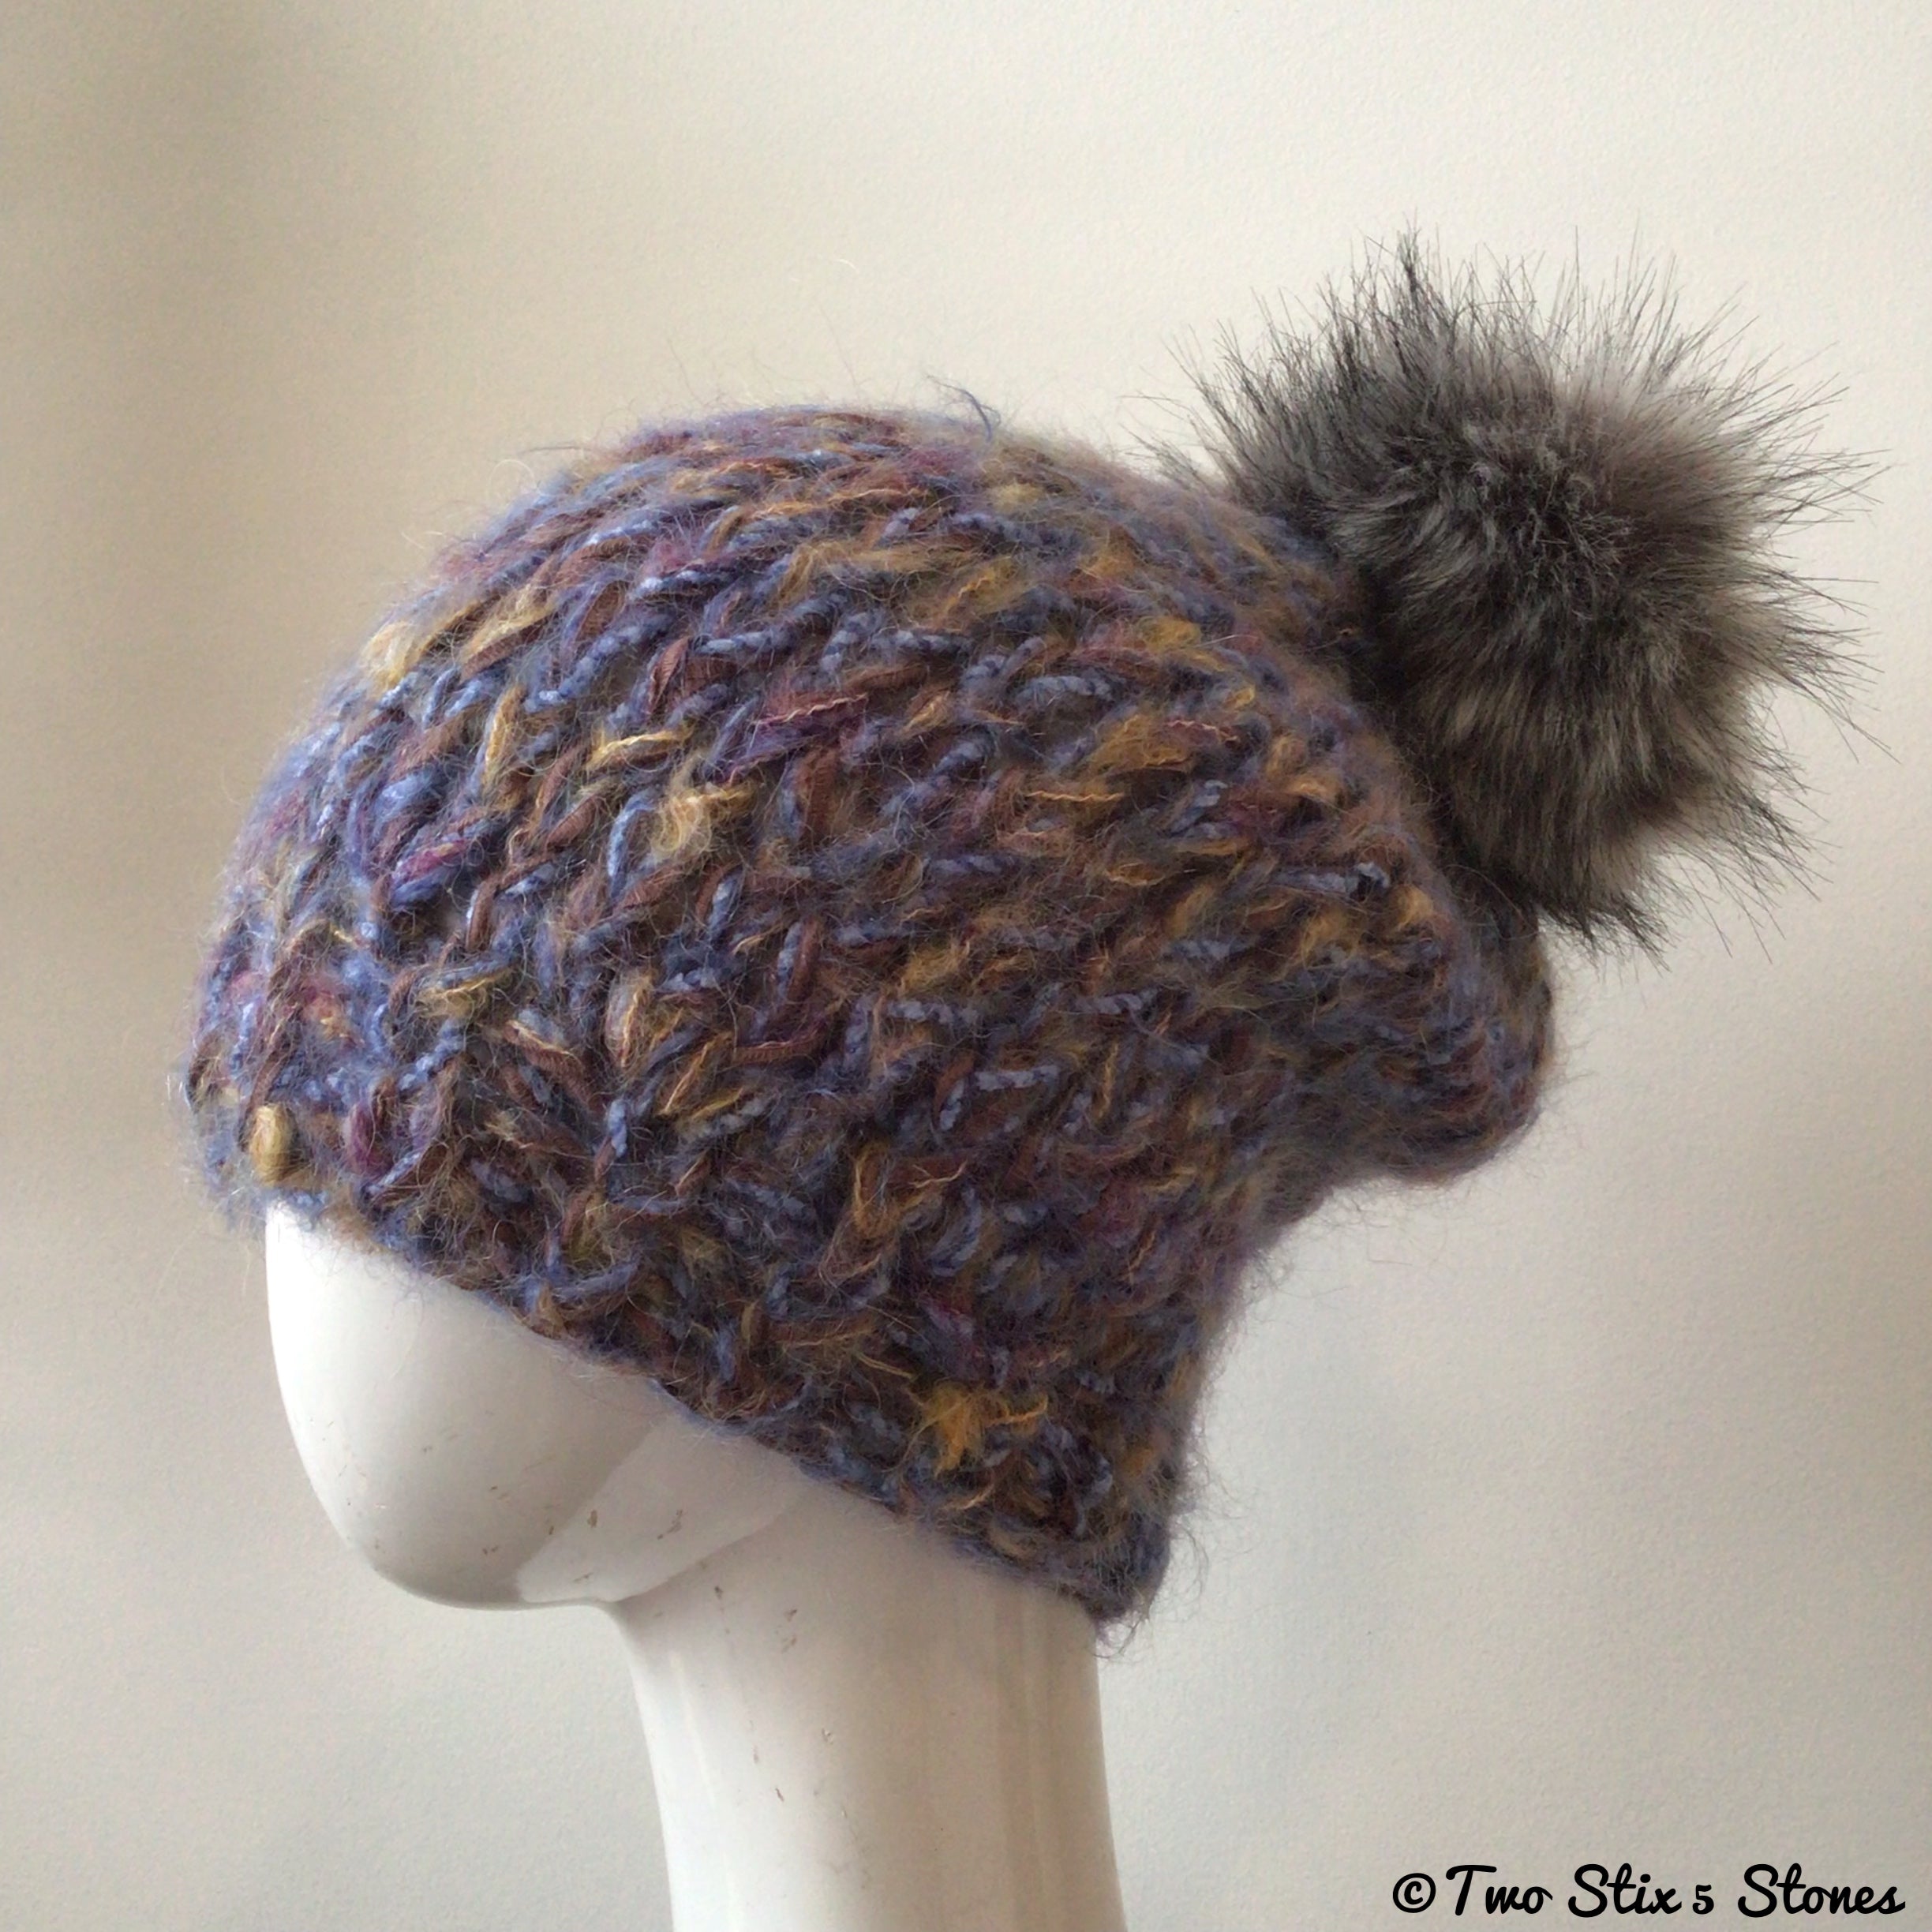 Blue & Tan Tweed Knit Hat w/Pom Pom